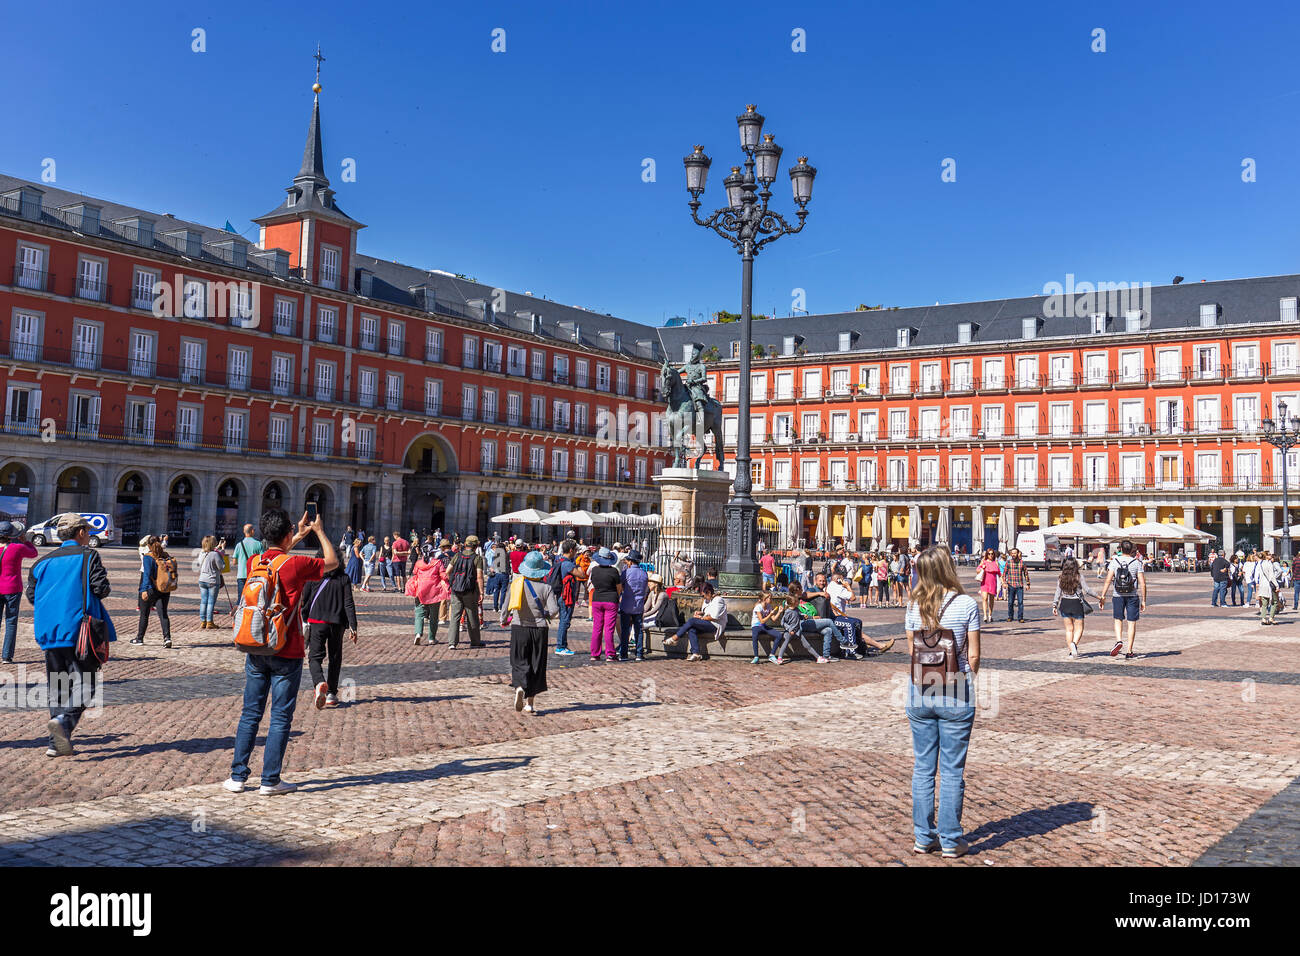 MADRID, Spanien 5. Juni: Touristen besuchen die Plaza Mayor, eine wichtige touristische Destination in Madrid am 5. Juni 2017 in Madrid, Spanien Stockfoto